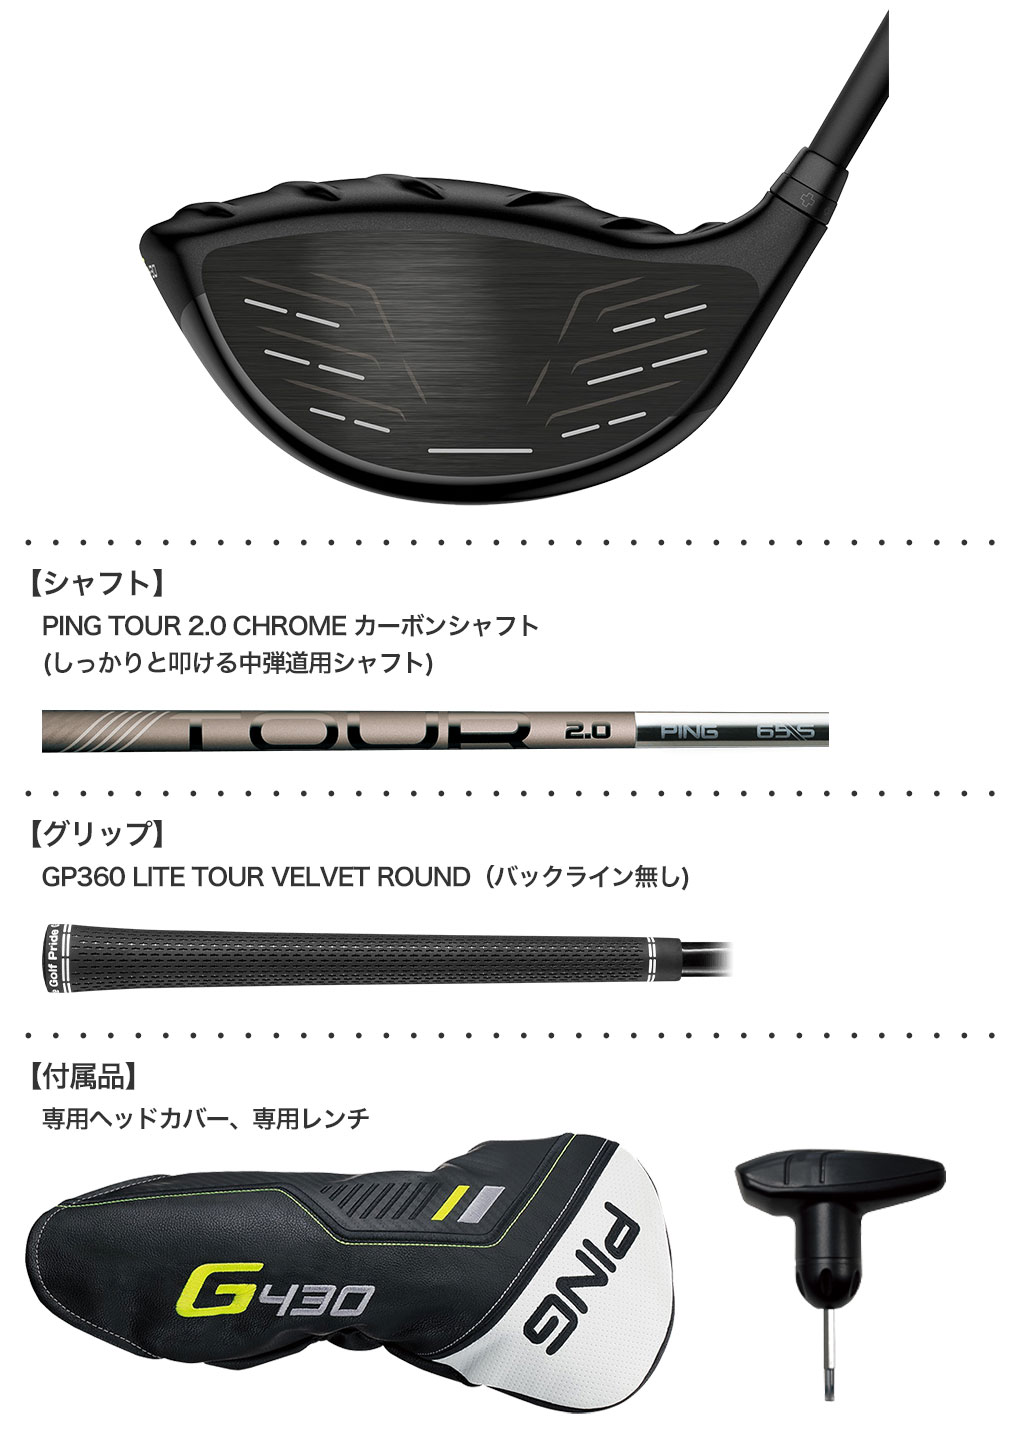 ピン G430 LST ドライバー メンズ 右用 PING TOUR 2.0 BLACK メーカー保証 PING ゴルフクラブ 日本正規品 2022年11月発売